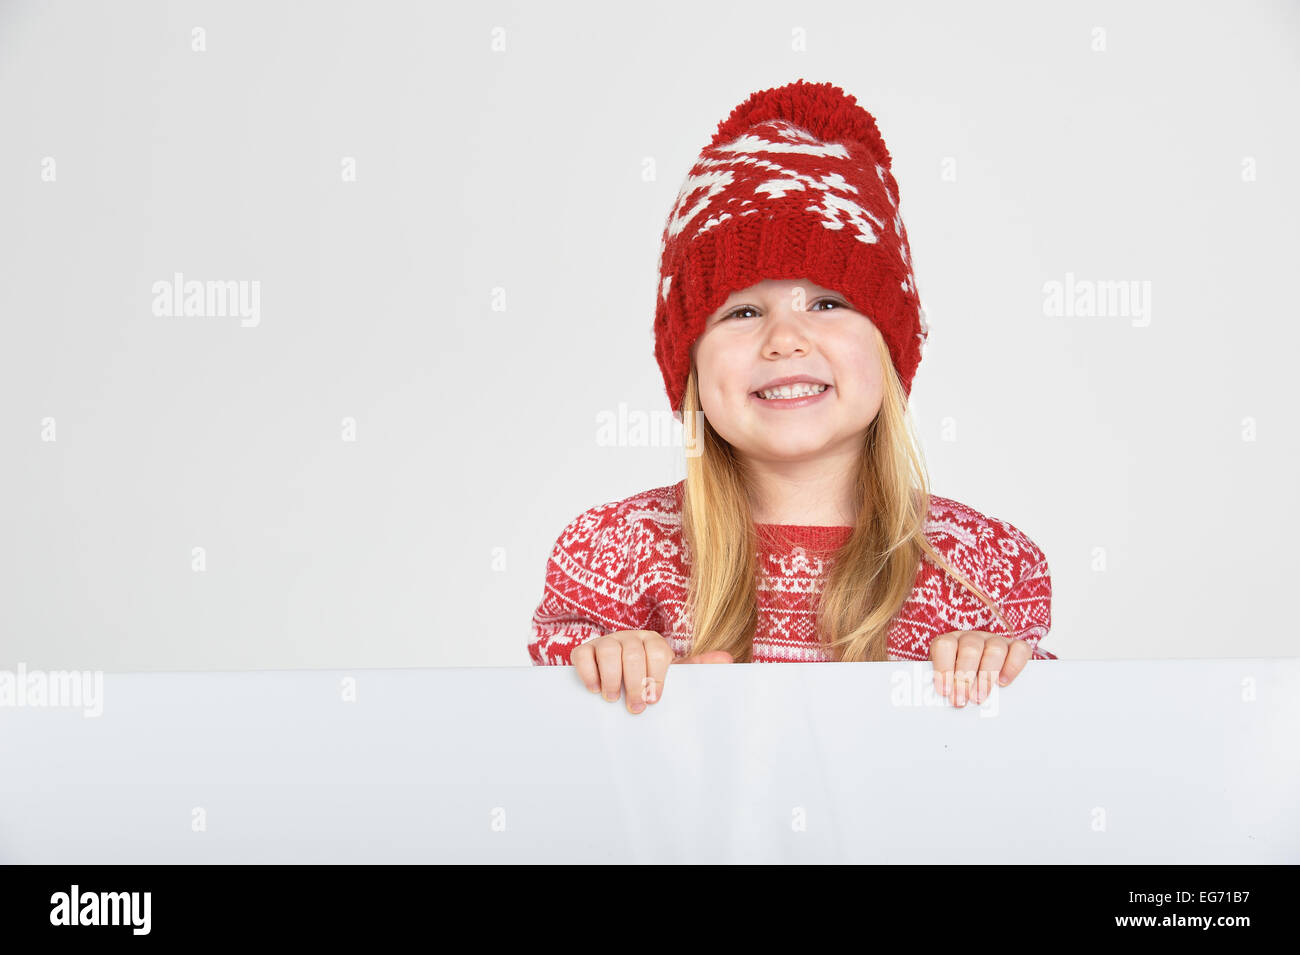 Schöne blondes Mädchen in einem roten Wintermütze und Pullover mit Leerraum für Text oder Werbung lächelnd Stockfoto